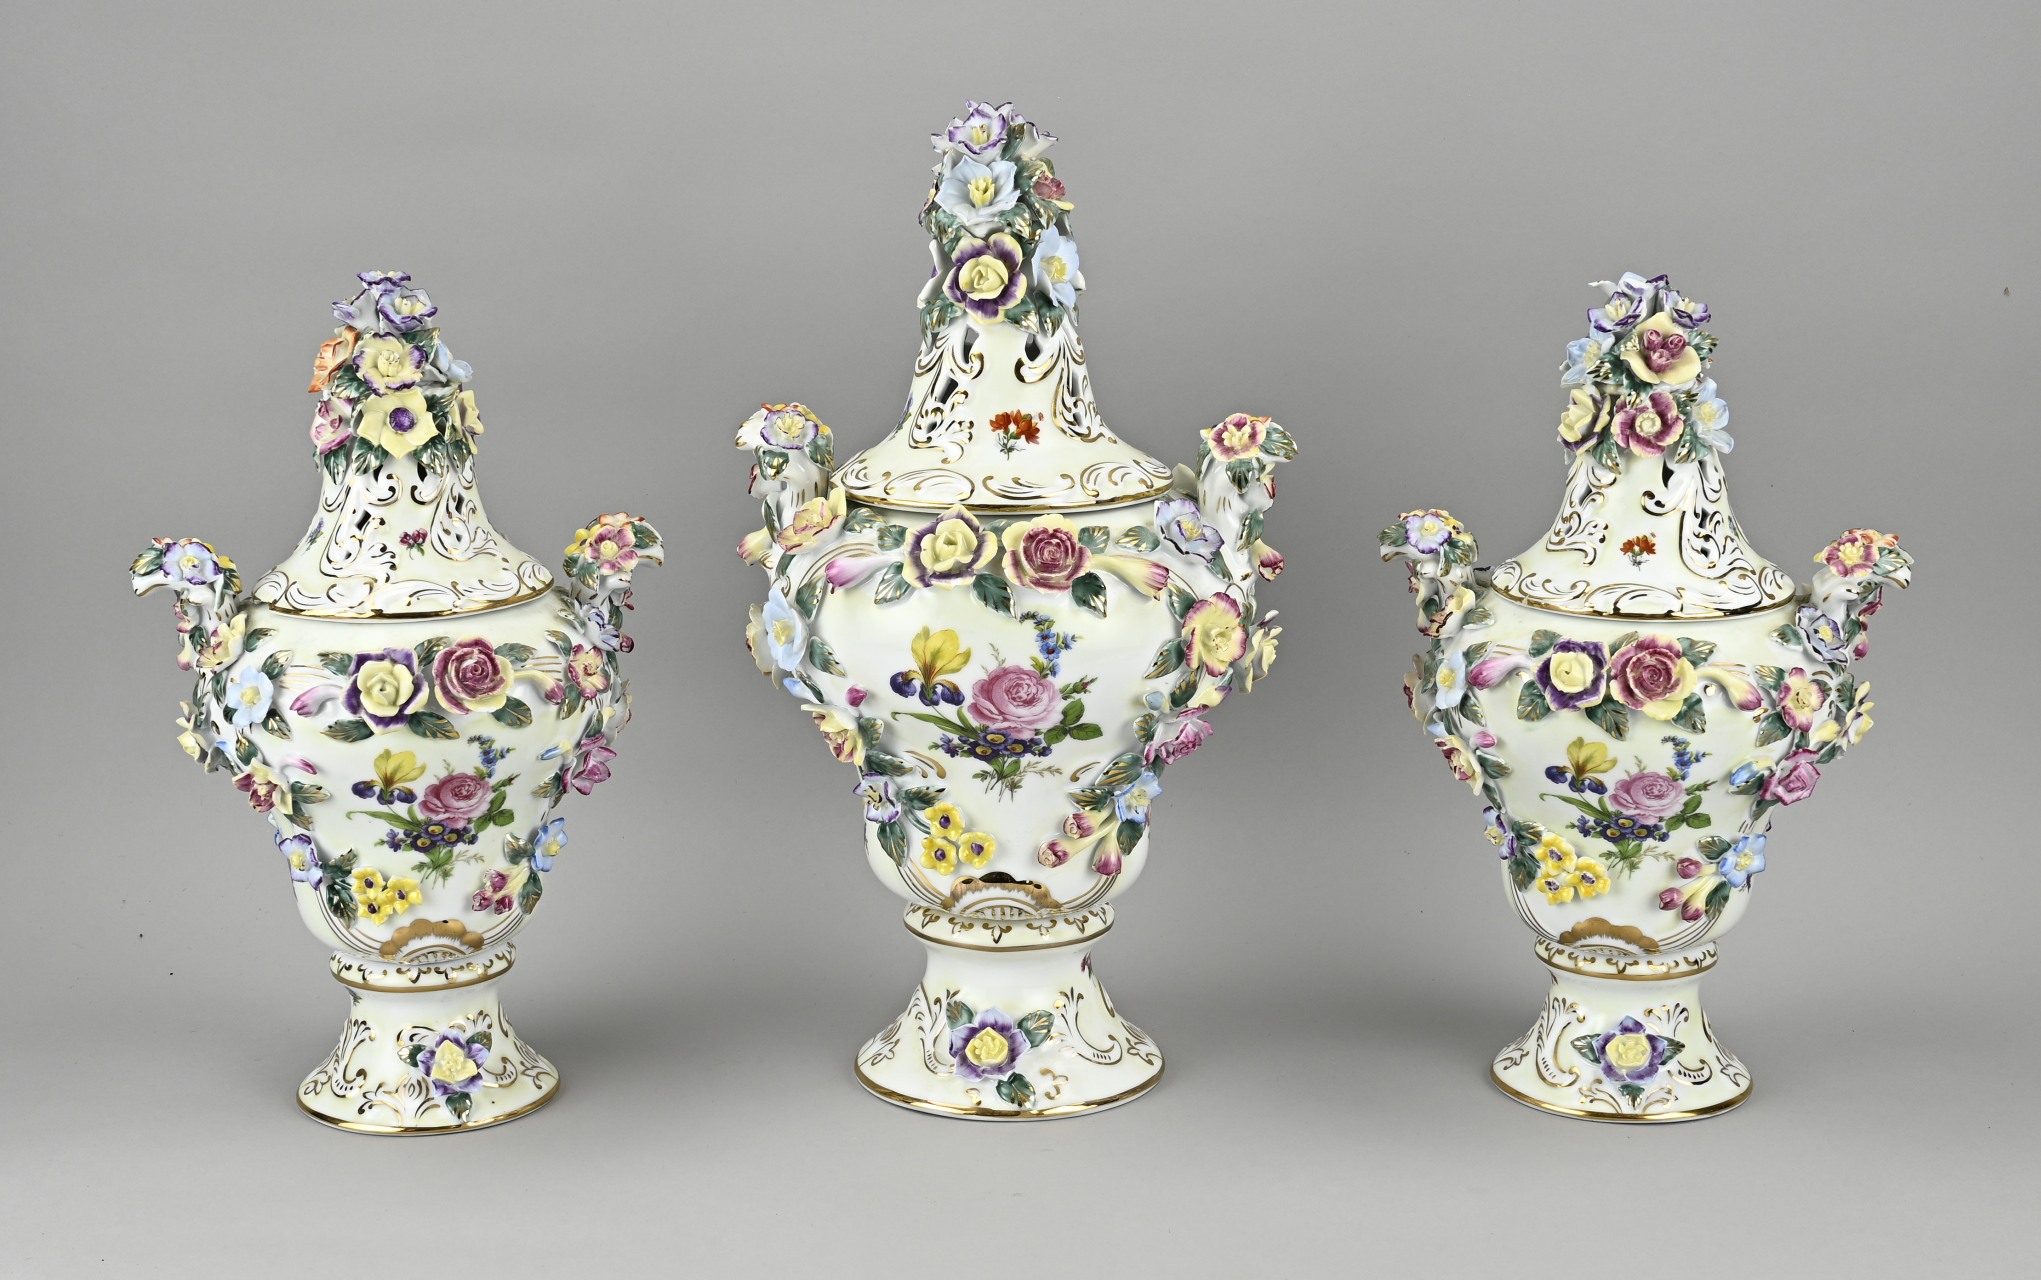 3x Italian lidded vase, H 34 - 40 cm.